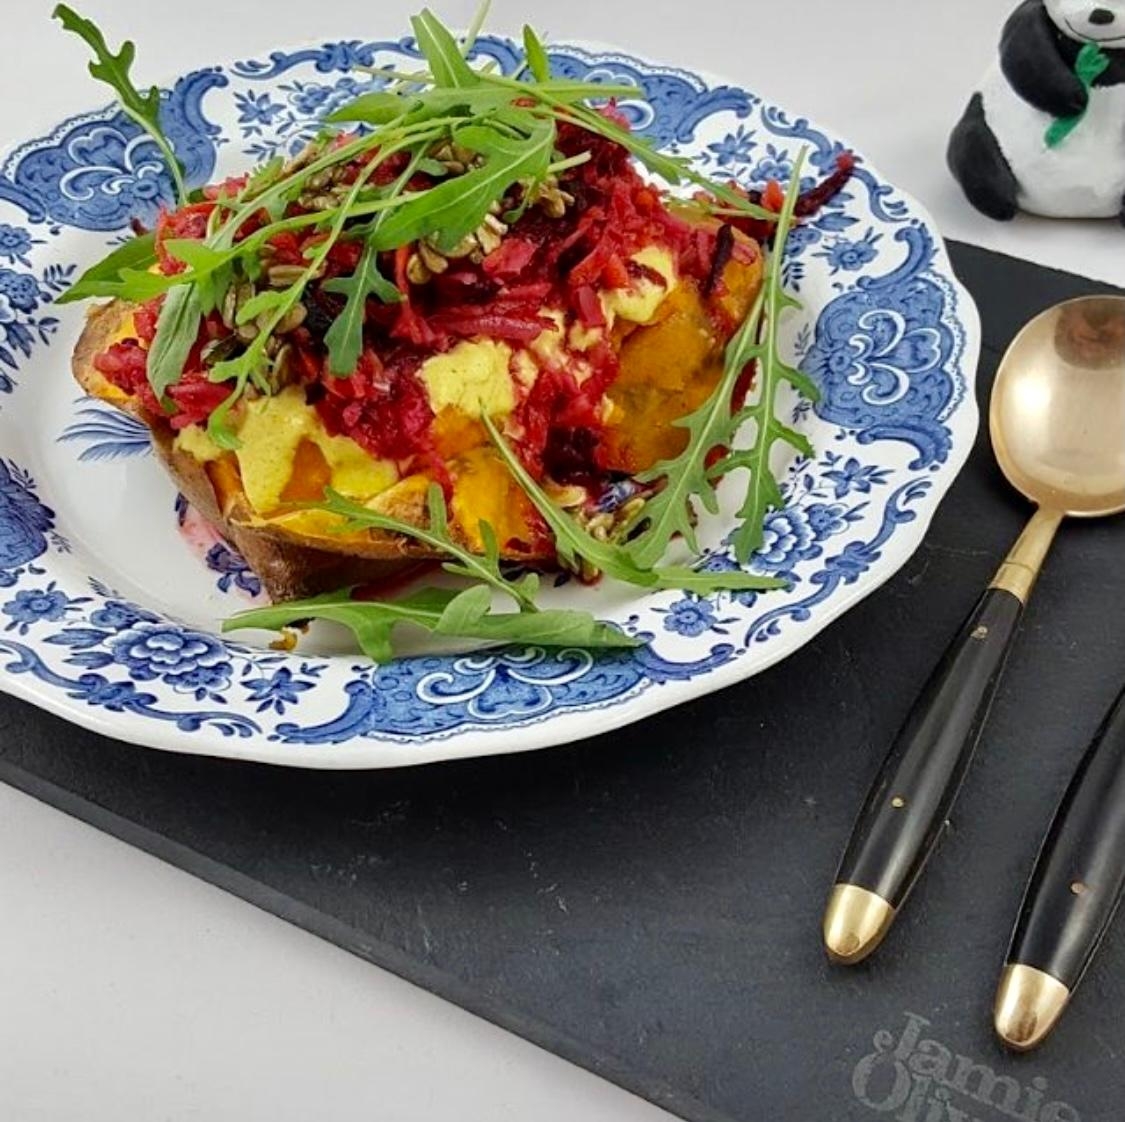 Ofen-Süßkartoffel mit saurem Salat aus rote Beete, Apfel, etc. und Kurkuma-Joghurt-Soße #foodchallenge #veggie